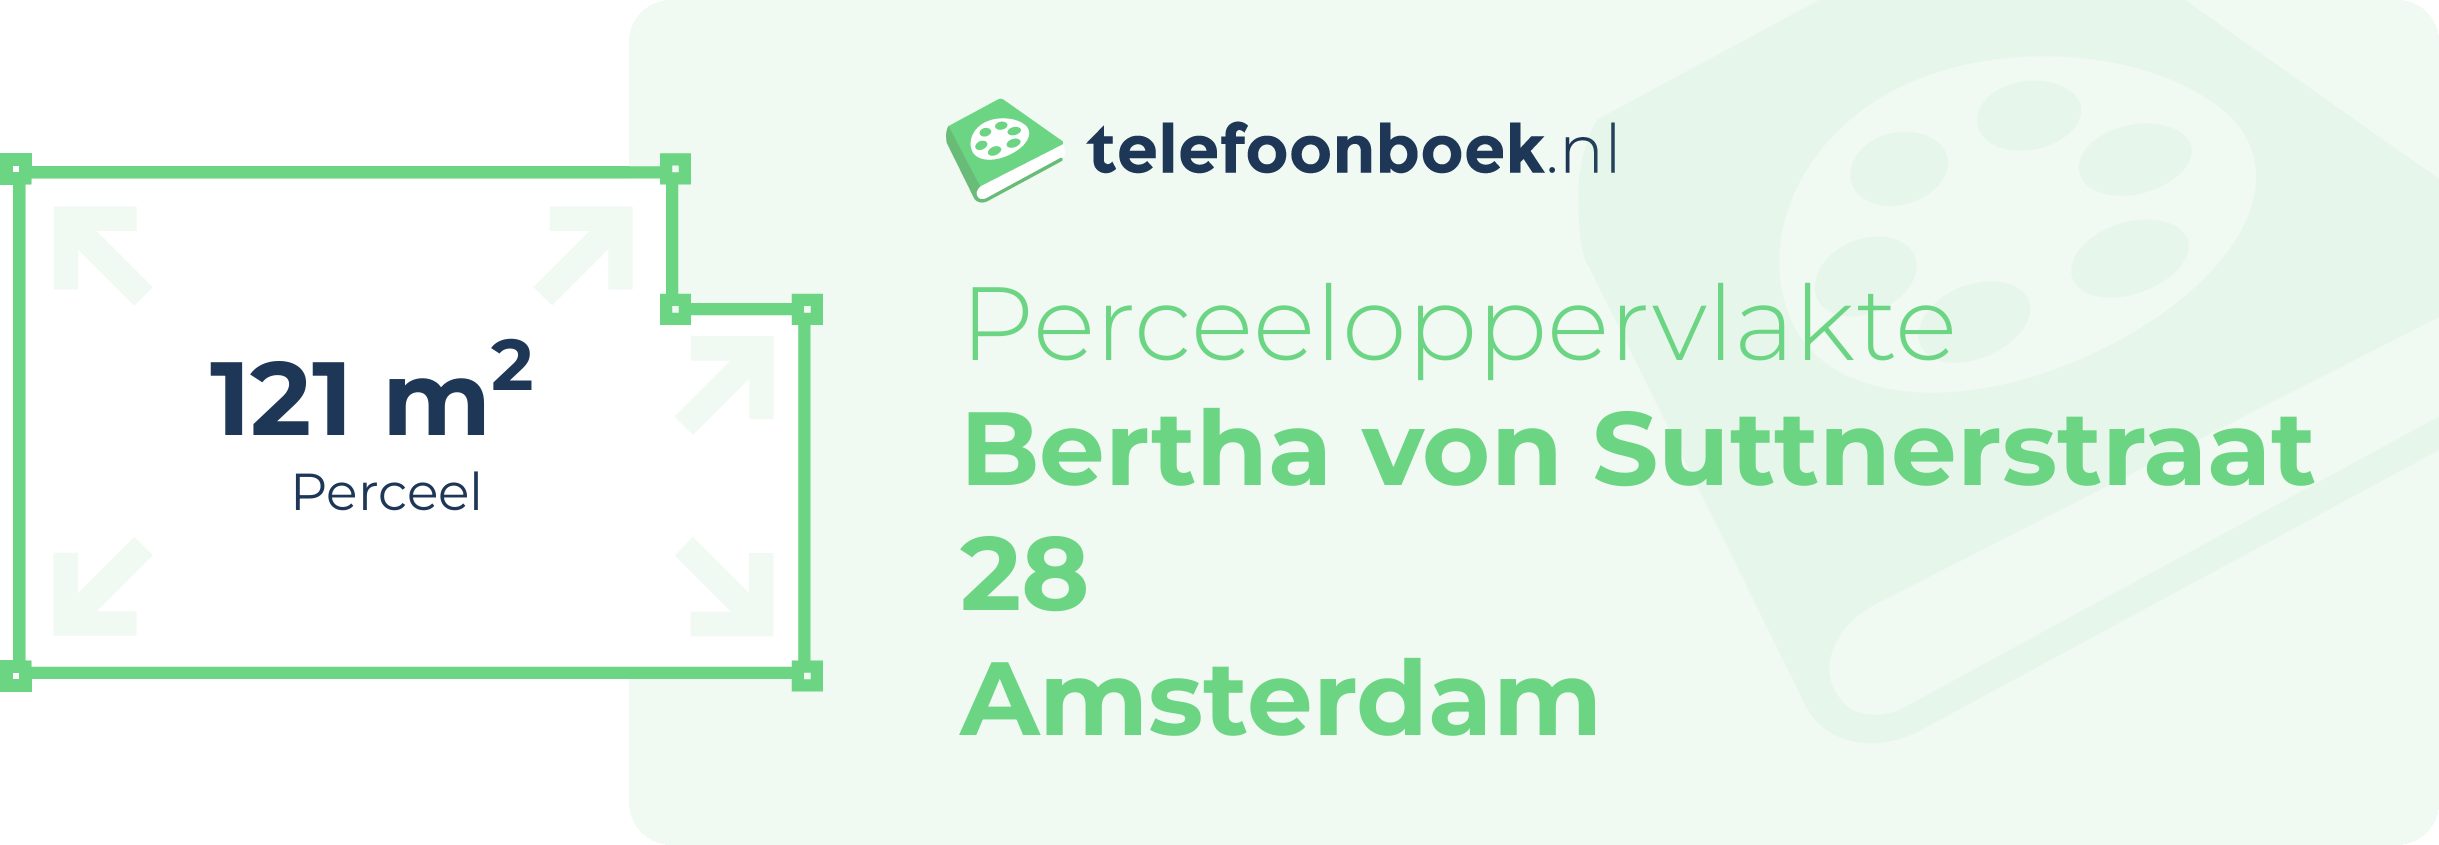 Perceeloppervlakte Bertha Von Suttnerstraat 28 Amsterdam